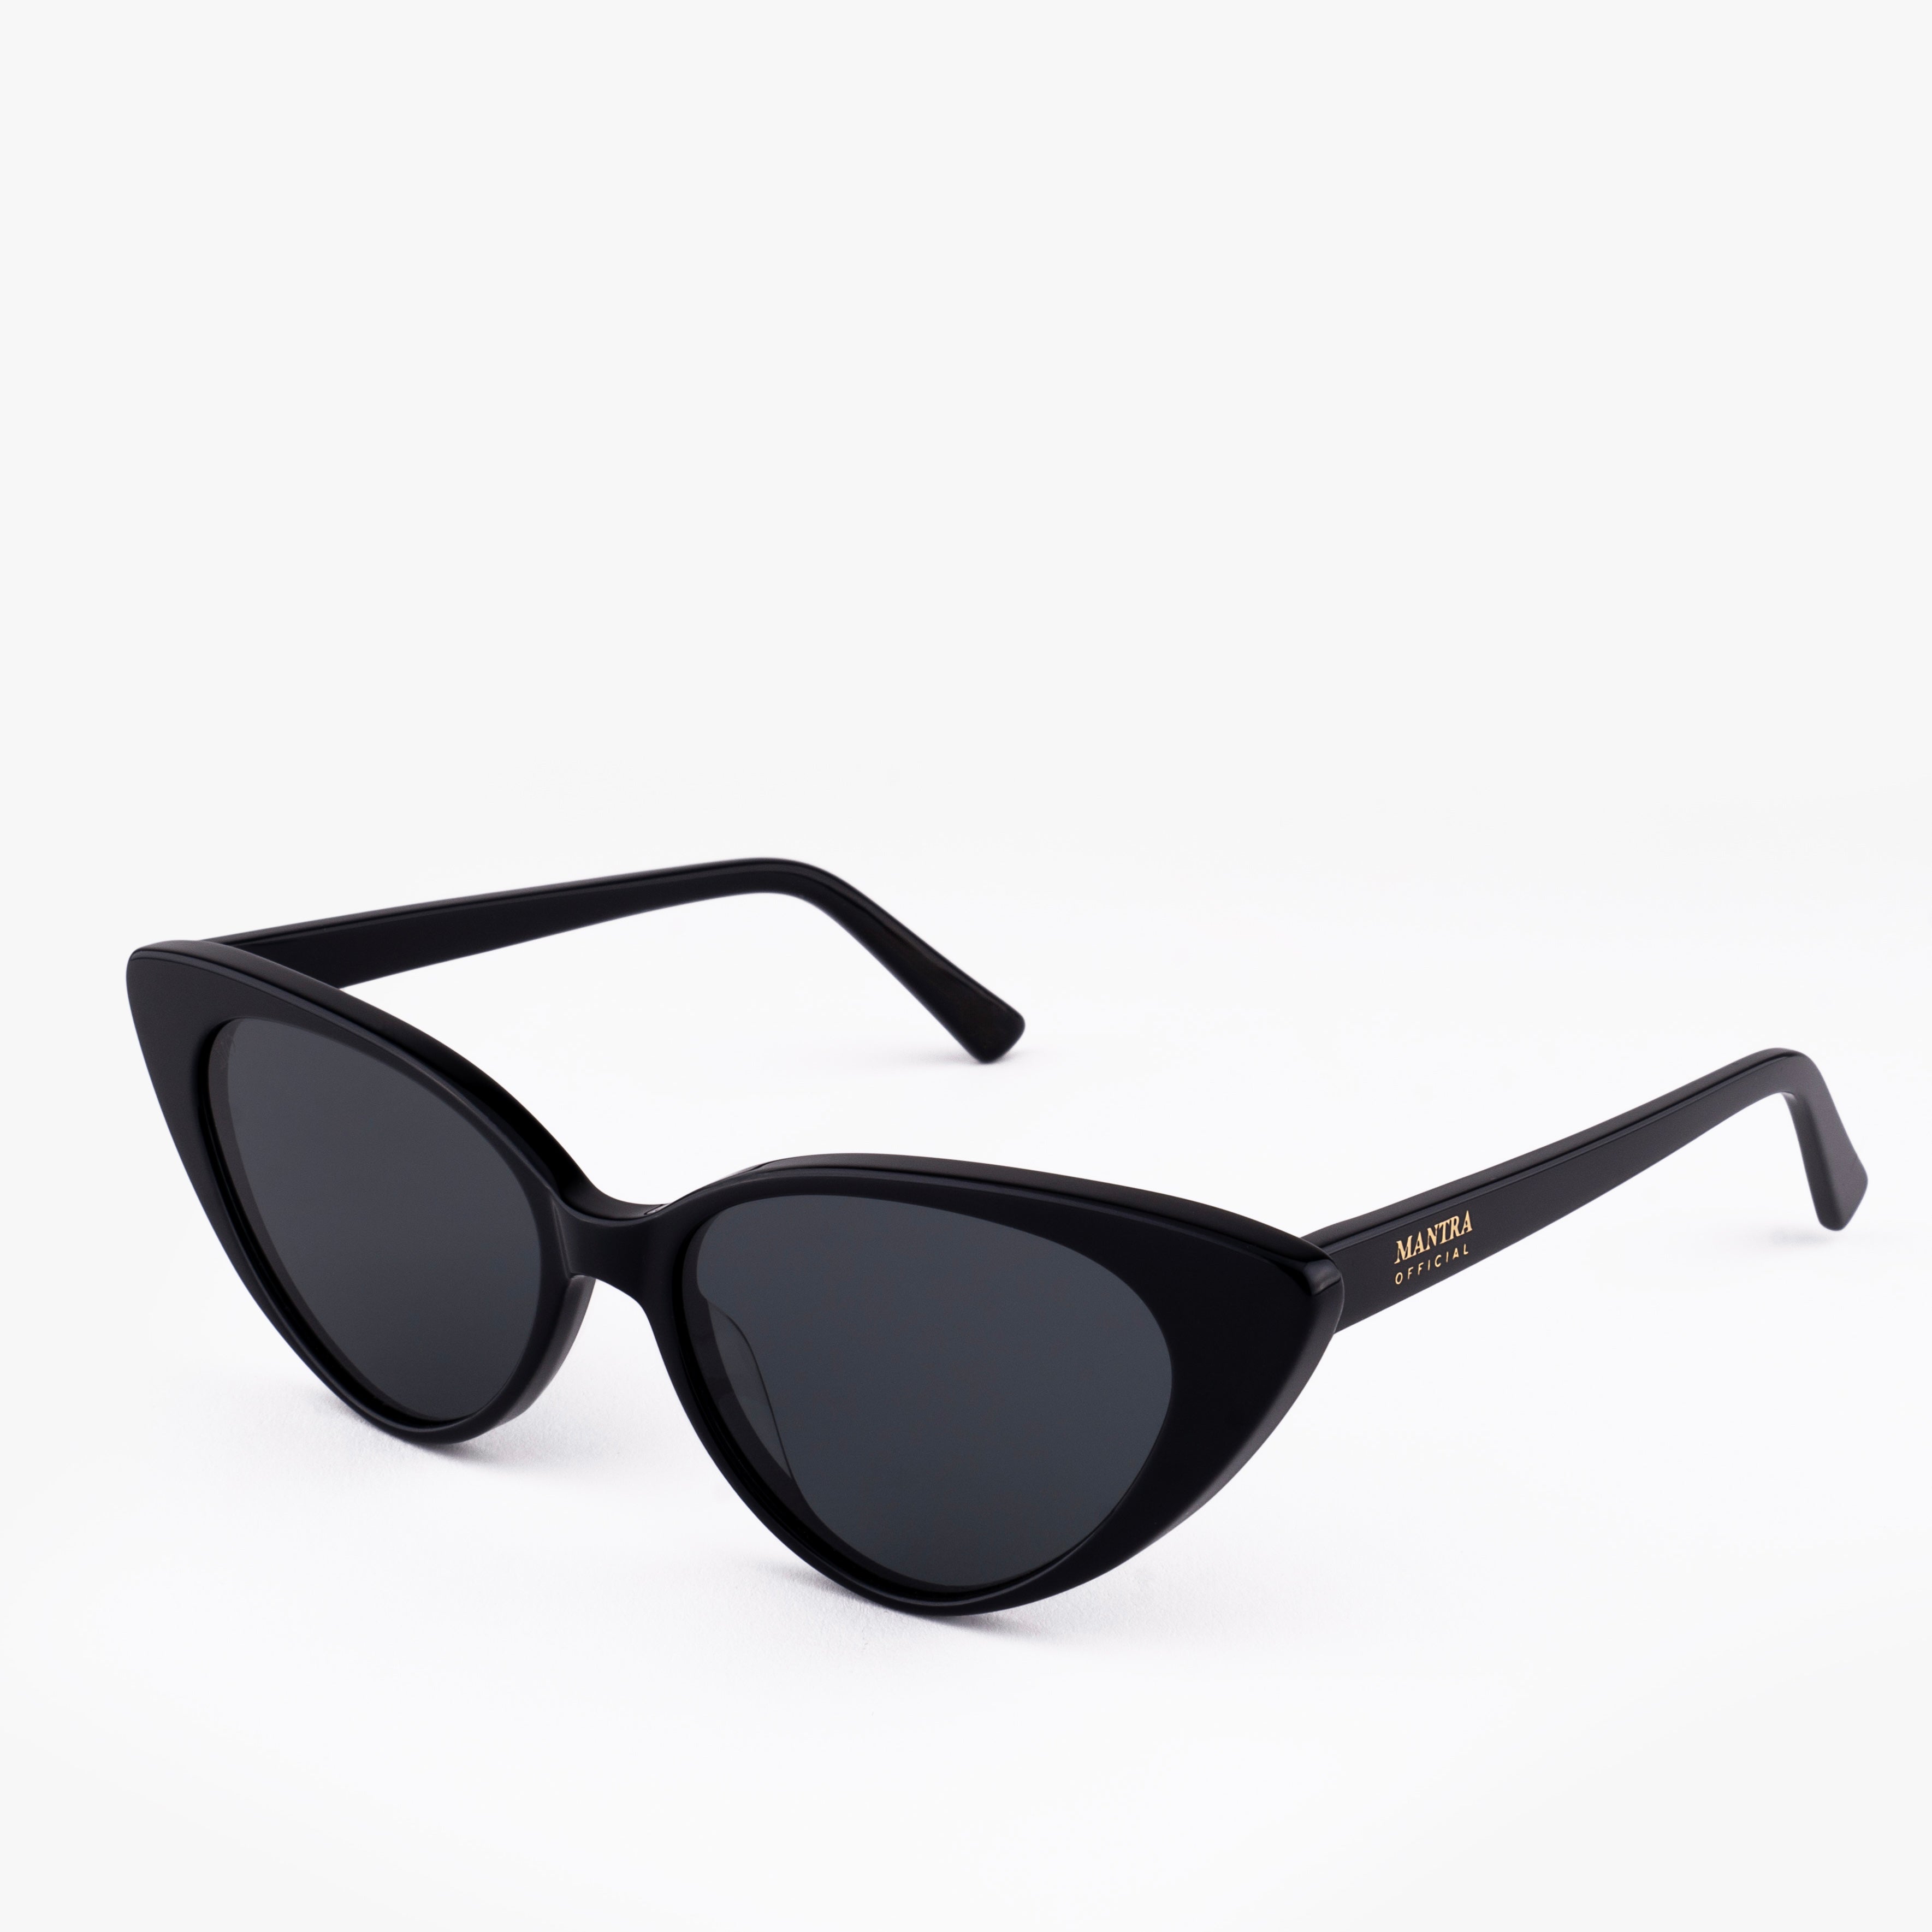 Monroe Sunglasses Black Retro Cat Eye Frame